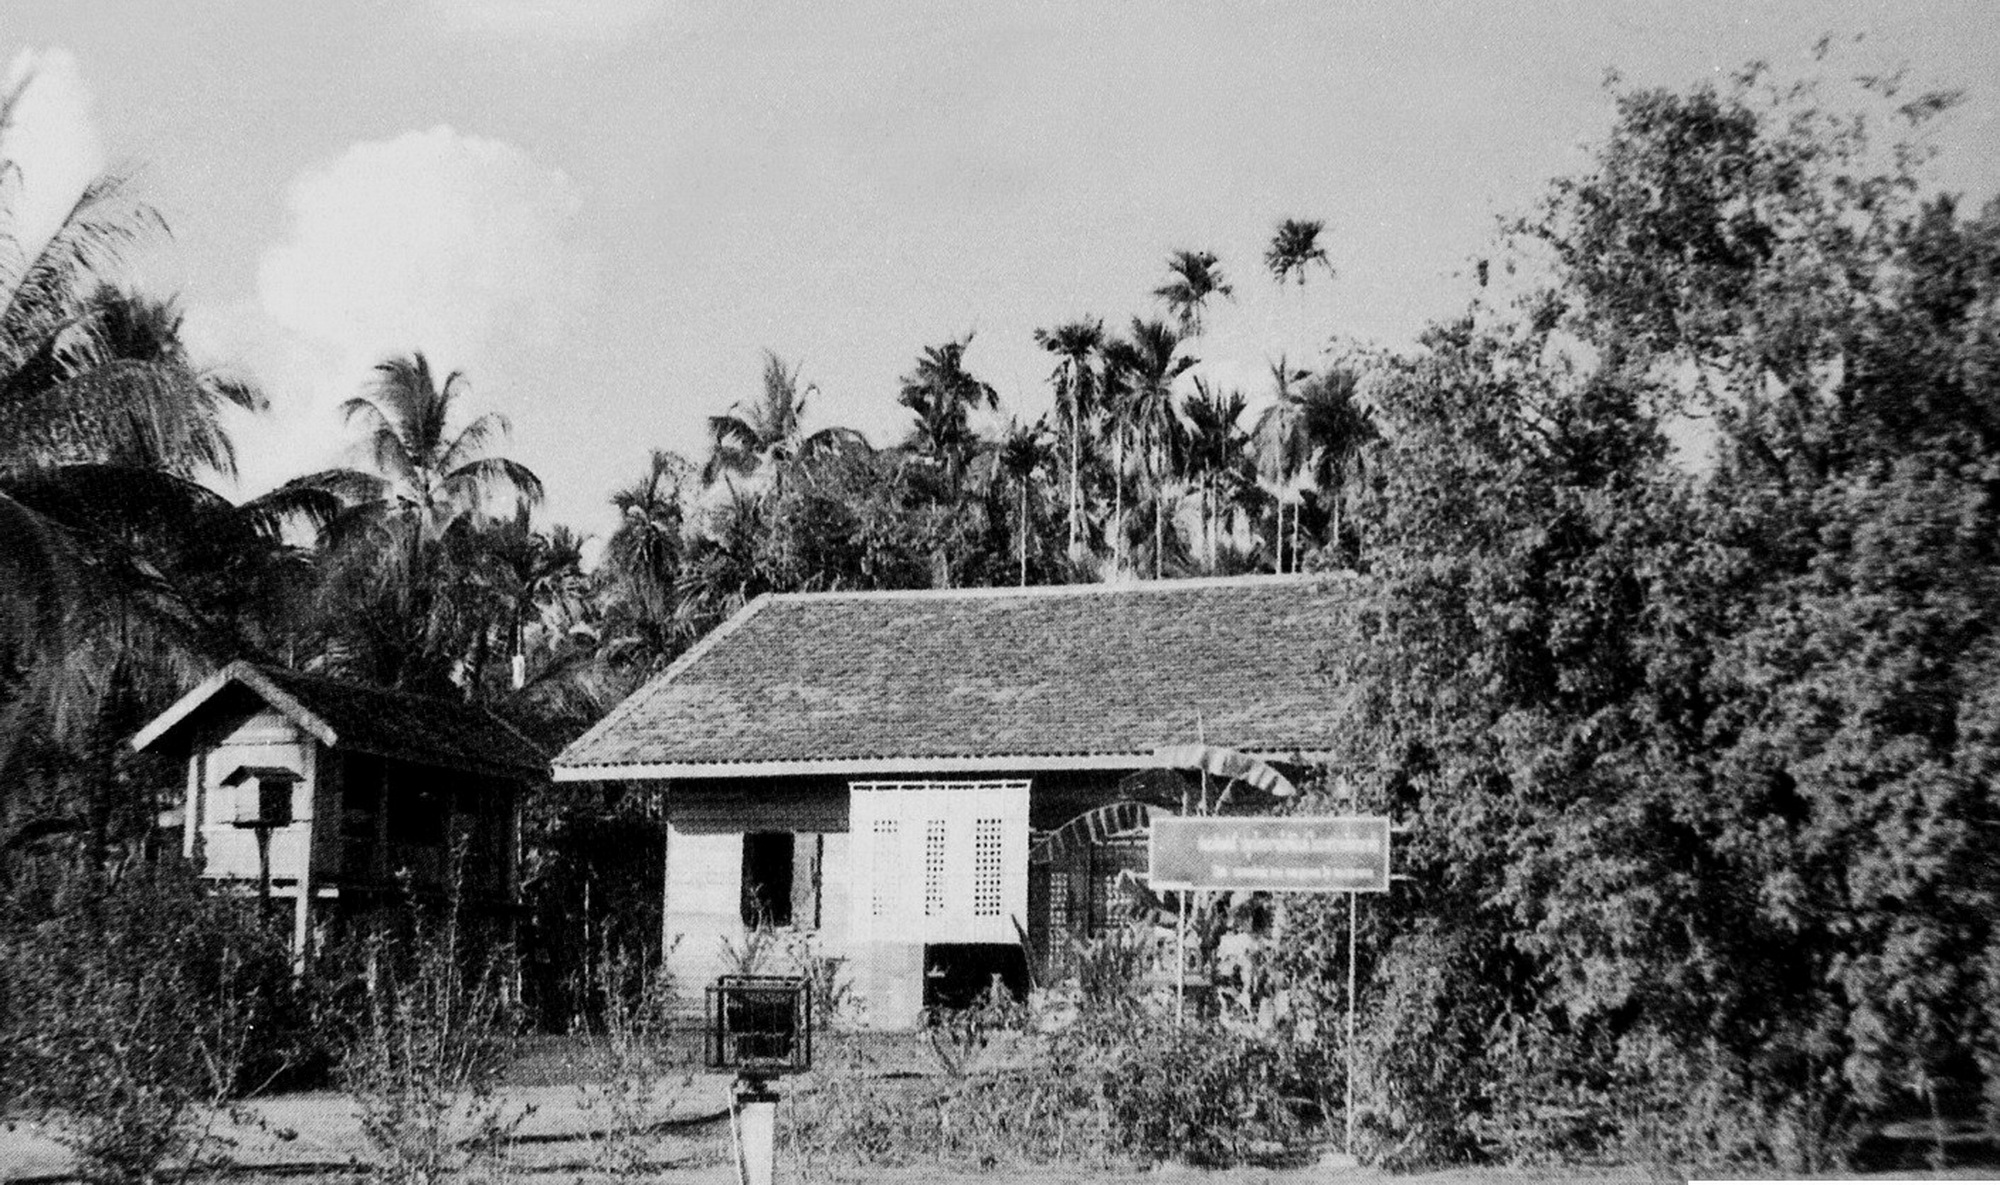 Ngôi nhà tại Nakhon, Phanom, Thái Lan, một trong những địa điểm Nguyễn Ái Quốc đã ở và vận động phong trào yêu nước của kiều bào Việt Nam ở Thái Lan (1928-1929)